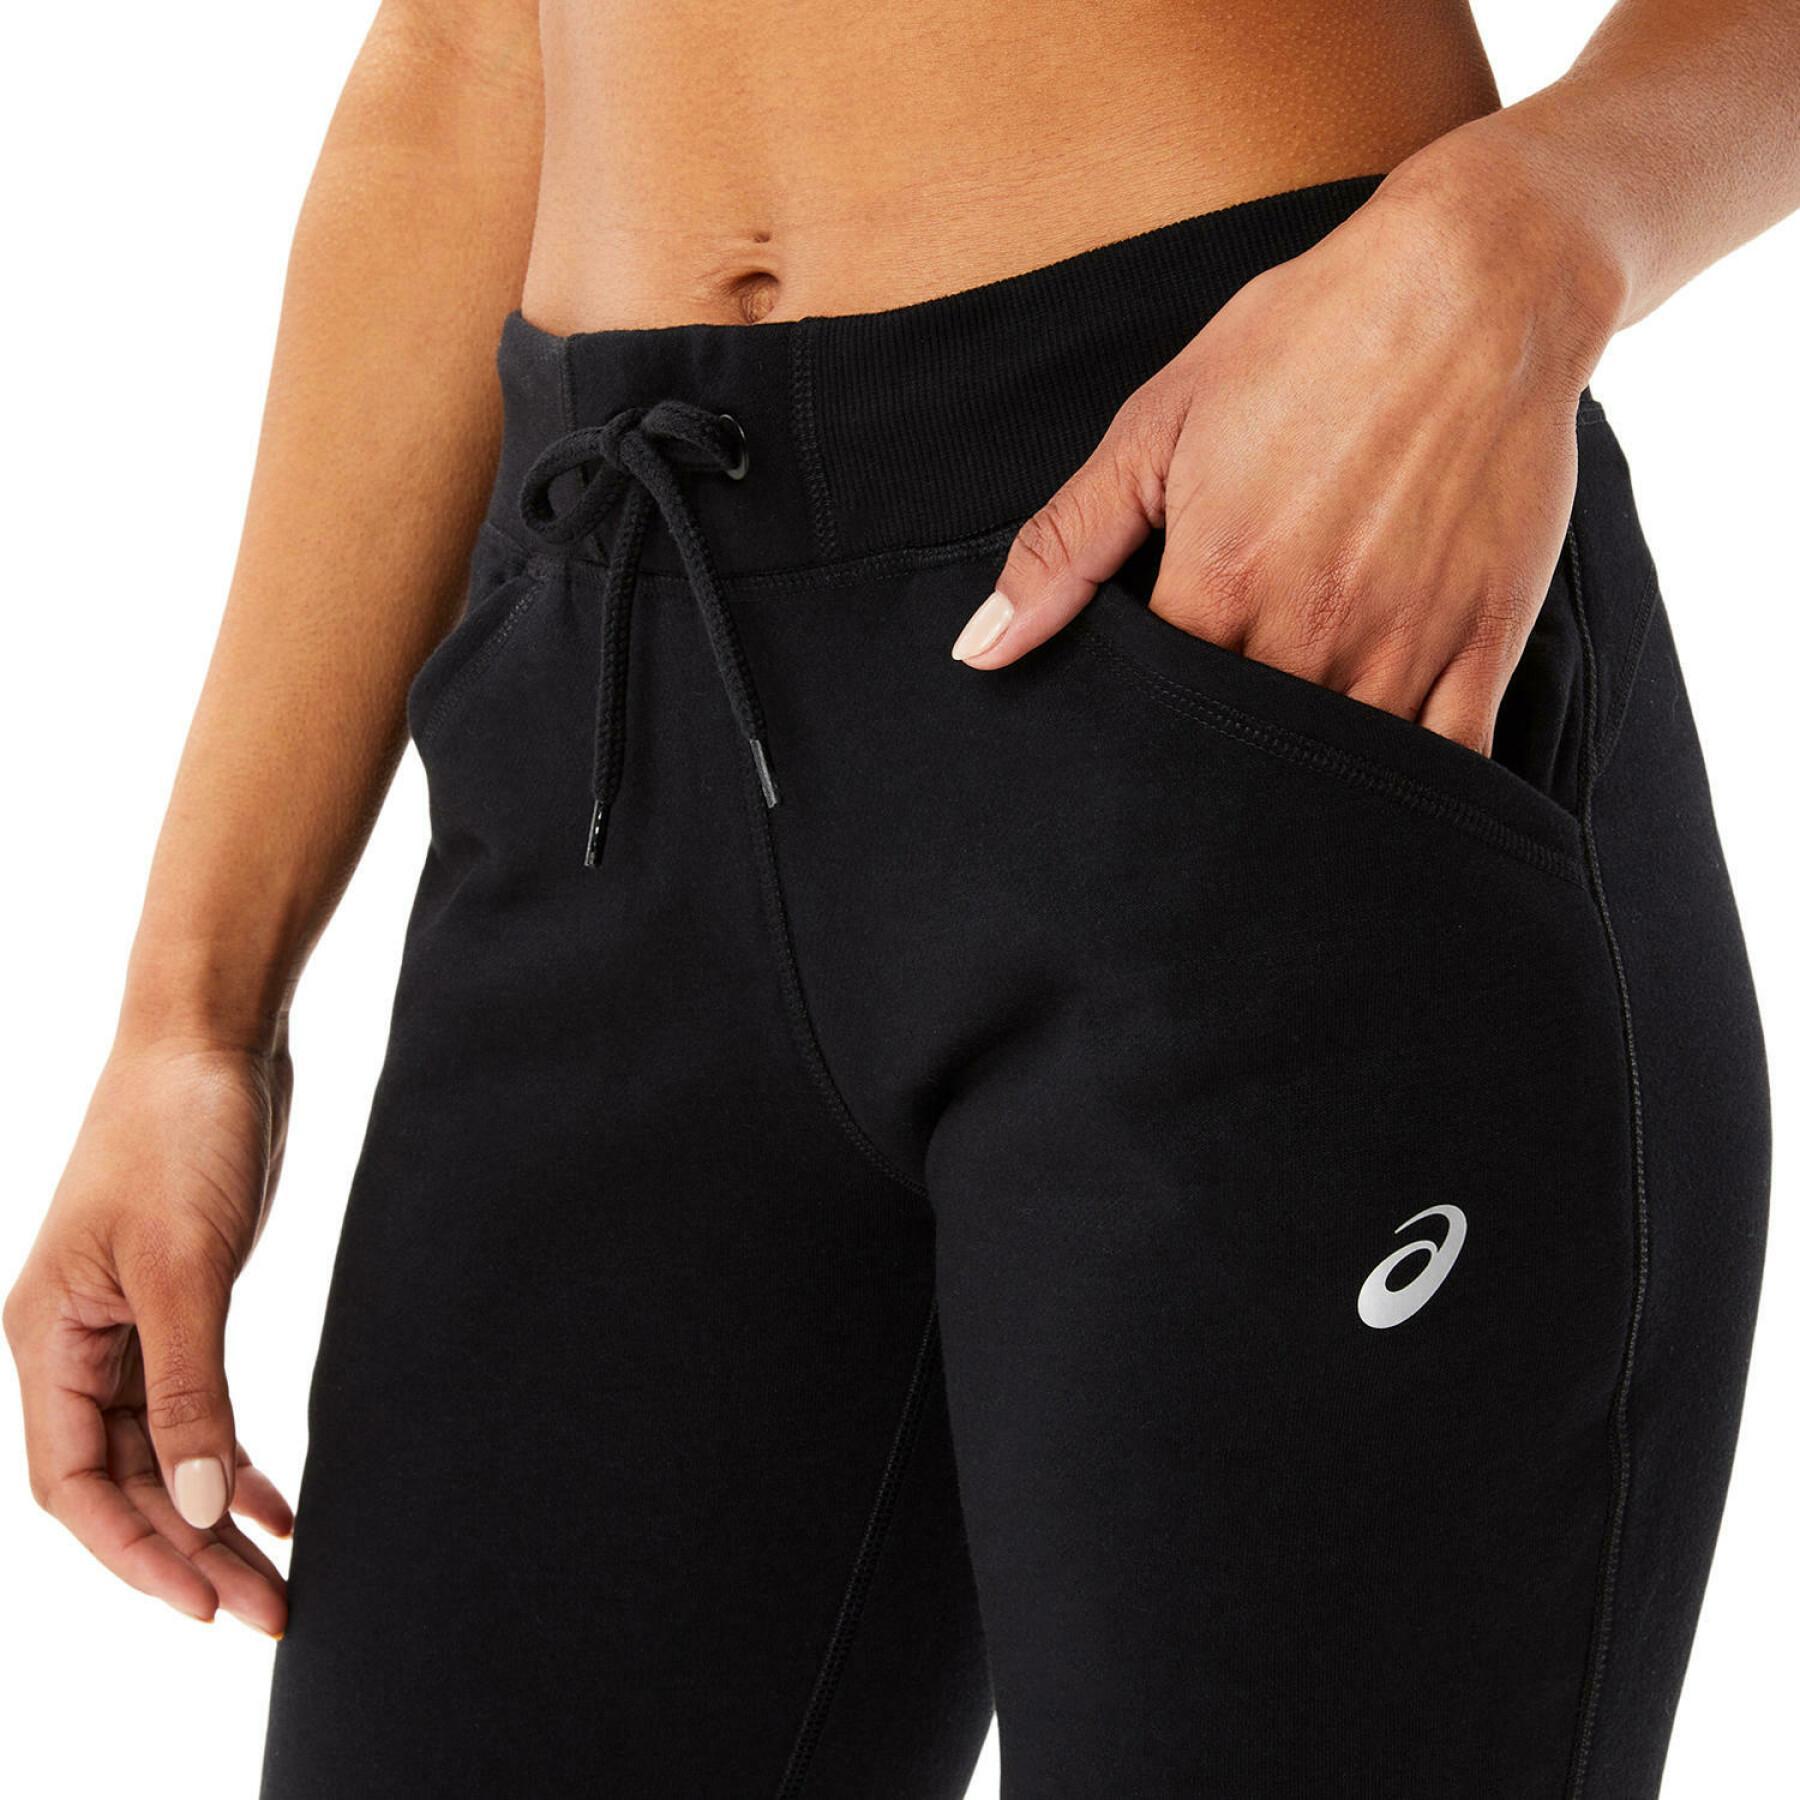 Pantalón de jogging para mujeres Asics Sport Knit